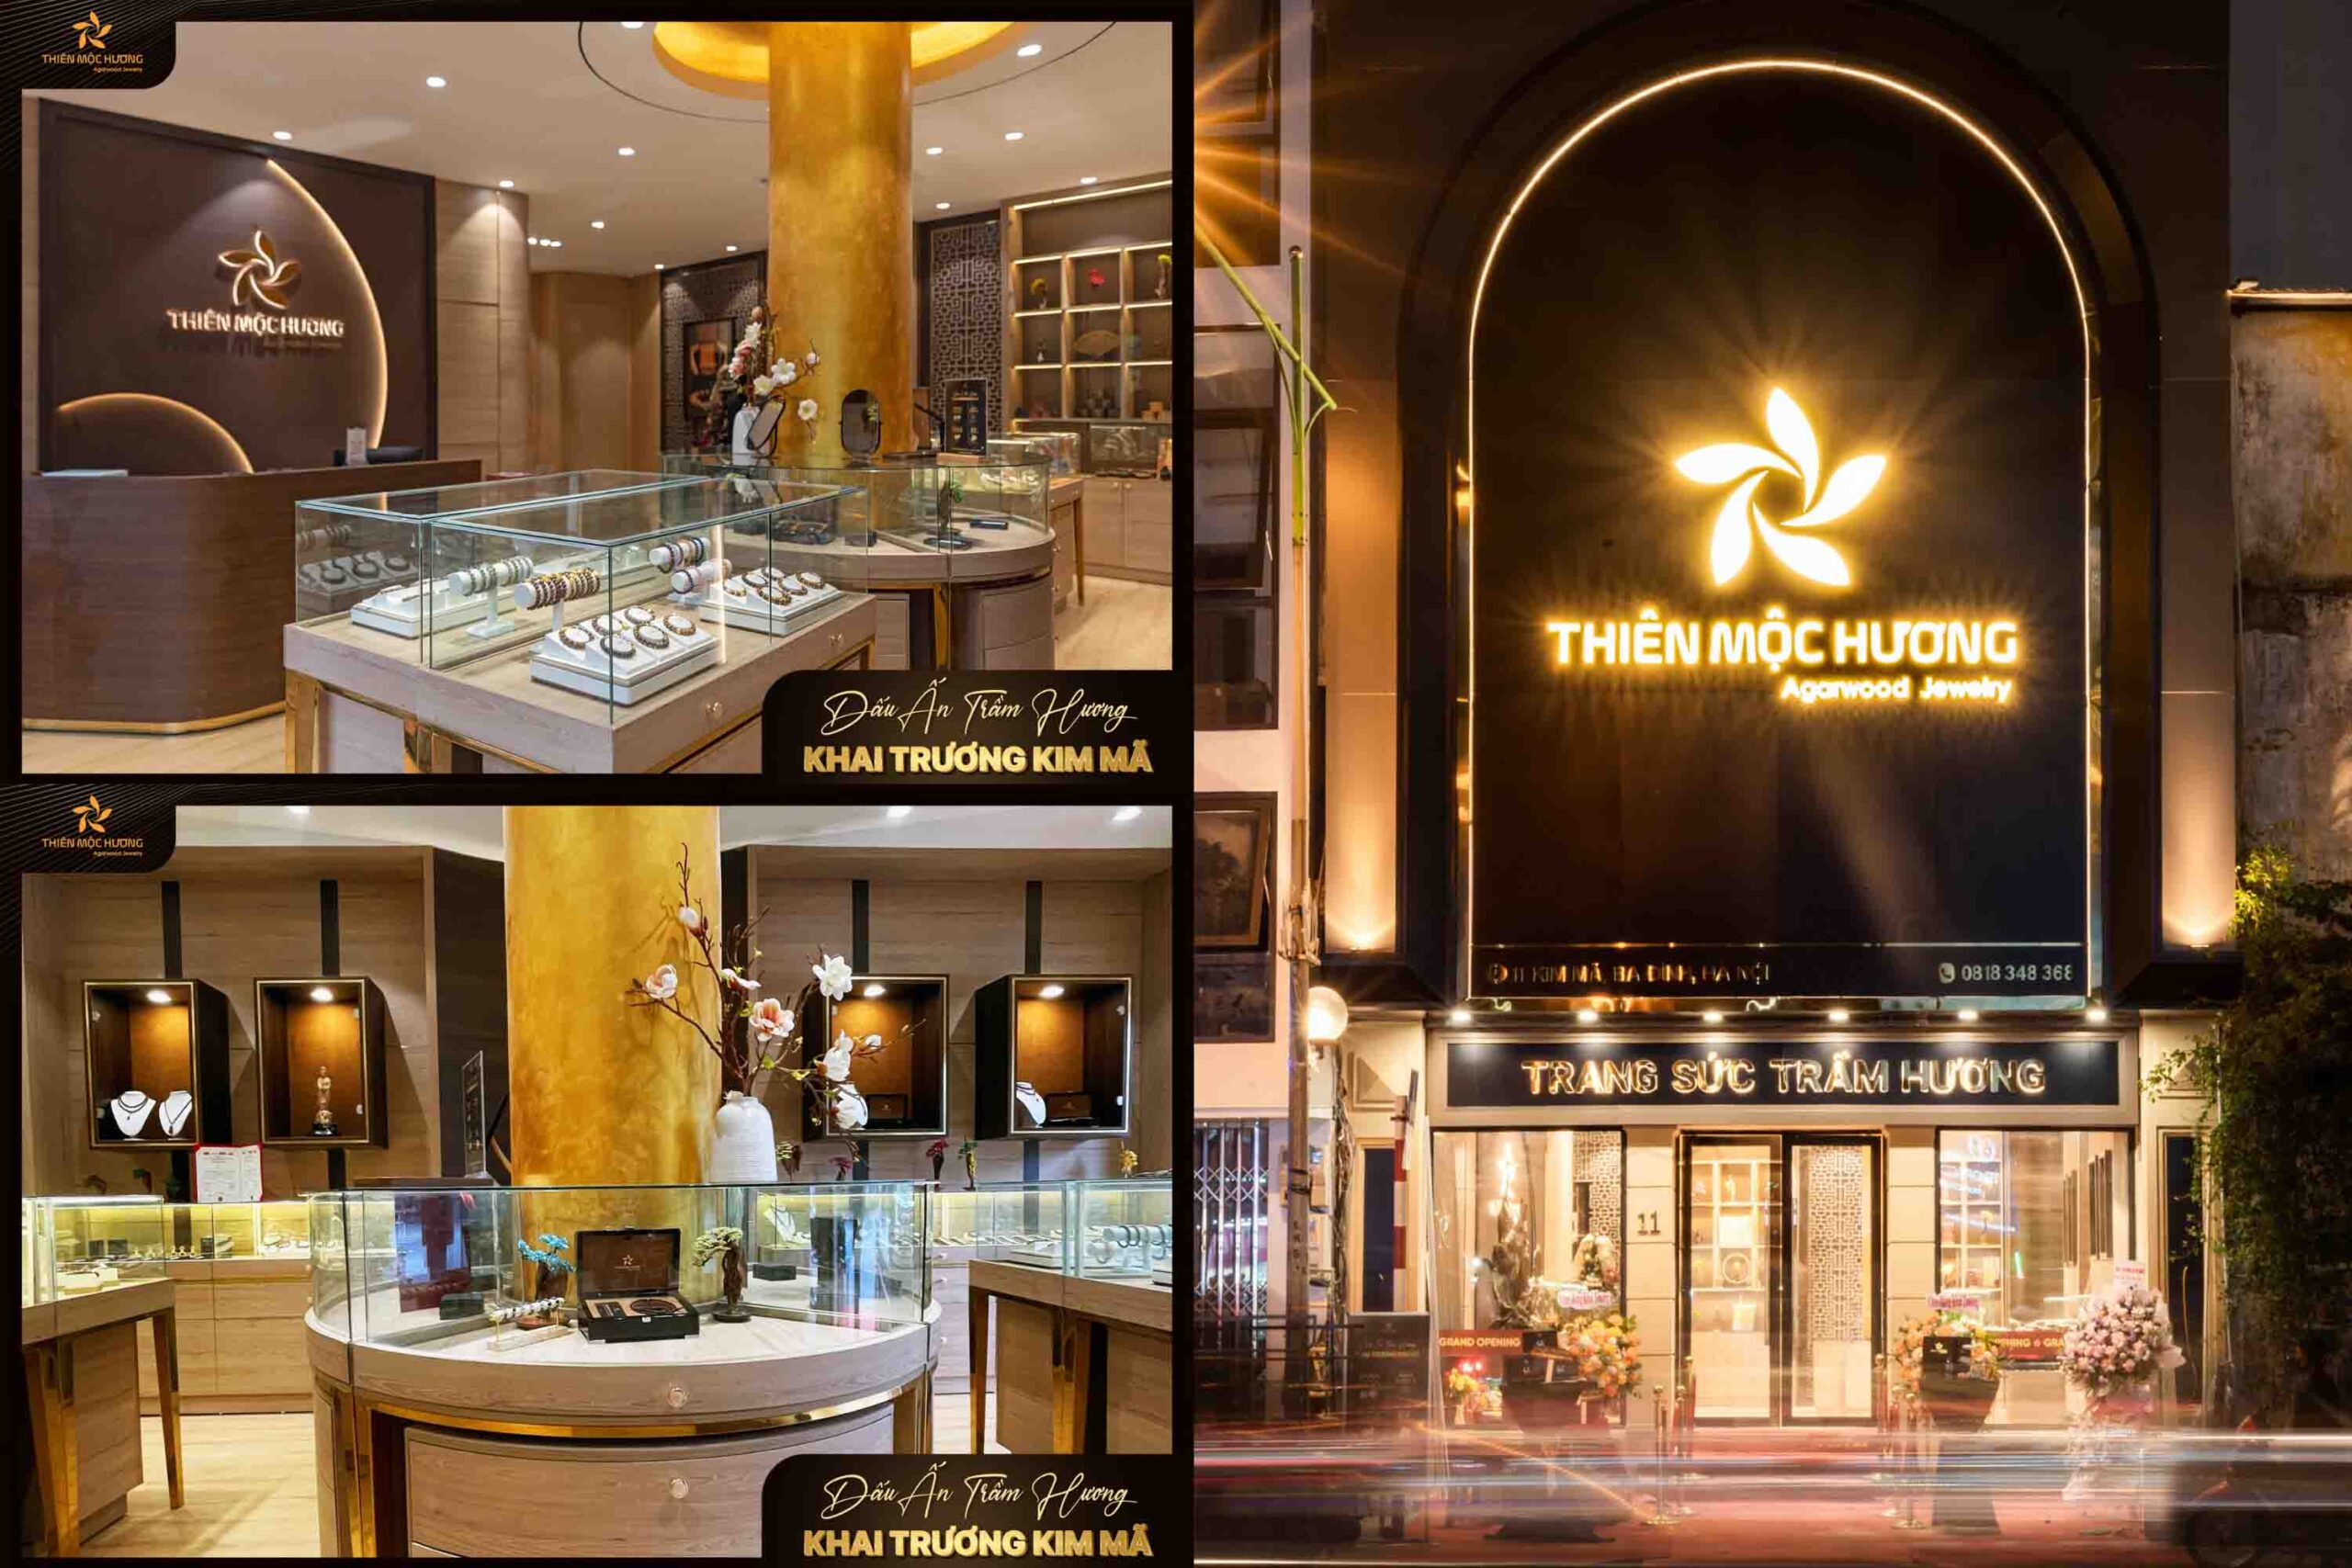 Flagship Store Kim Mã đánh dấu sự lột xác hoàn toàn của Thiên Mộc Hương - một hình ảnh hiện đại, đẳng cấp và sang trọng.